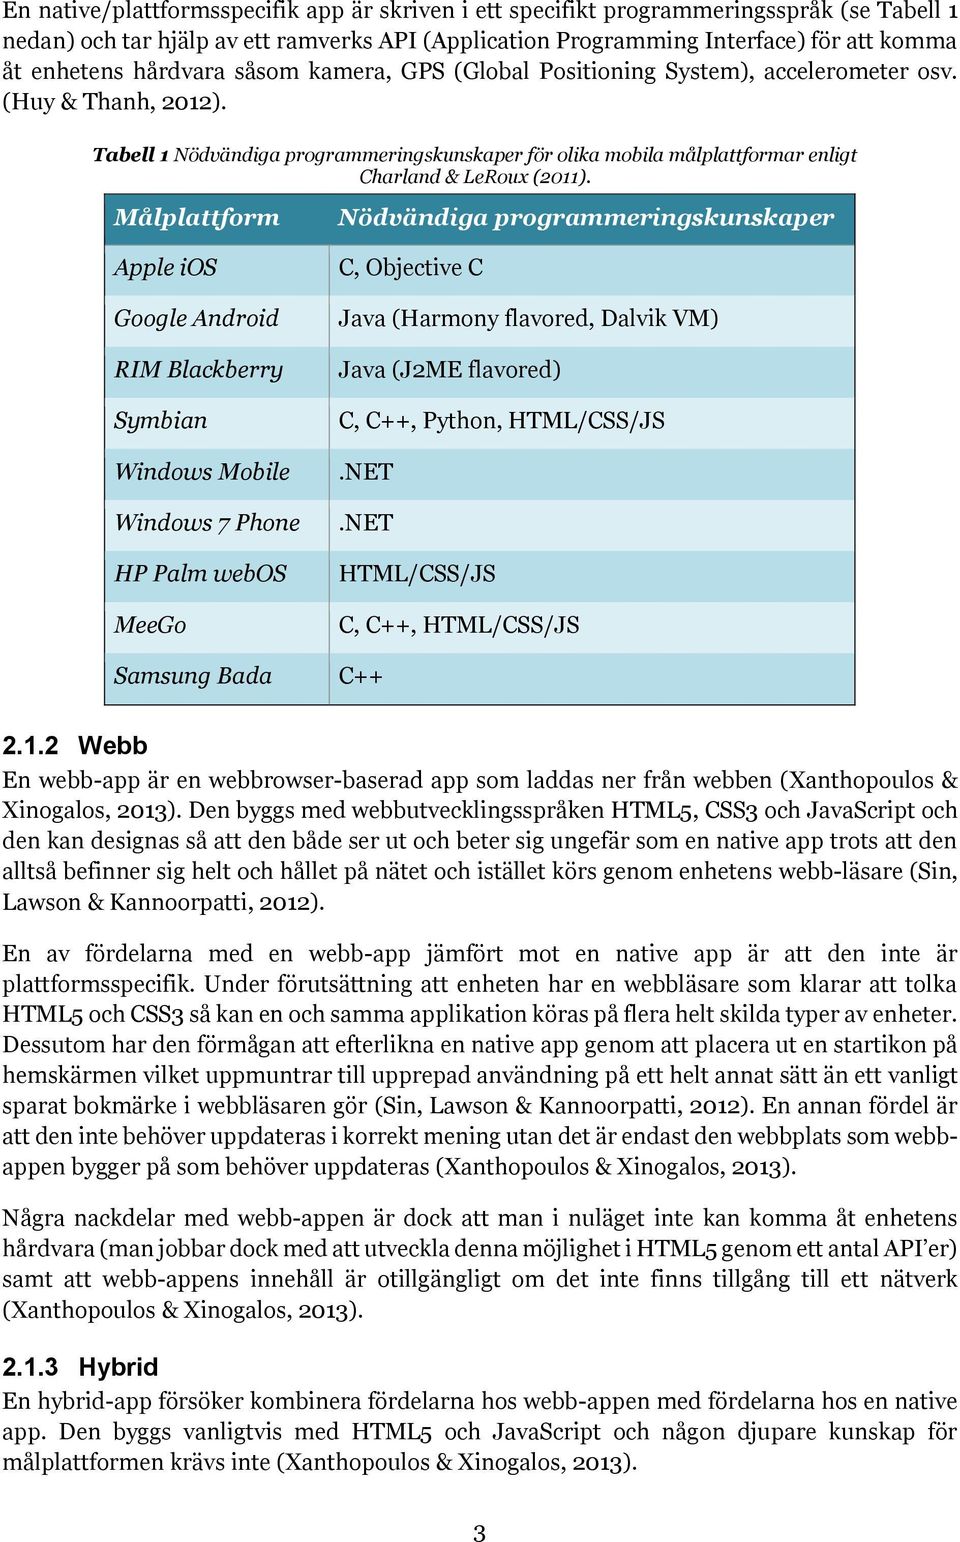 Tabell 1 Nödvändiga programmeringskunskaper för olika mobila målplattformar enligt Charland & LeRoux (2011).